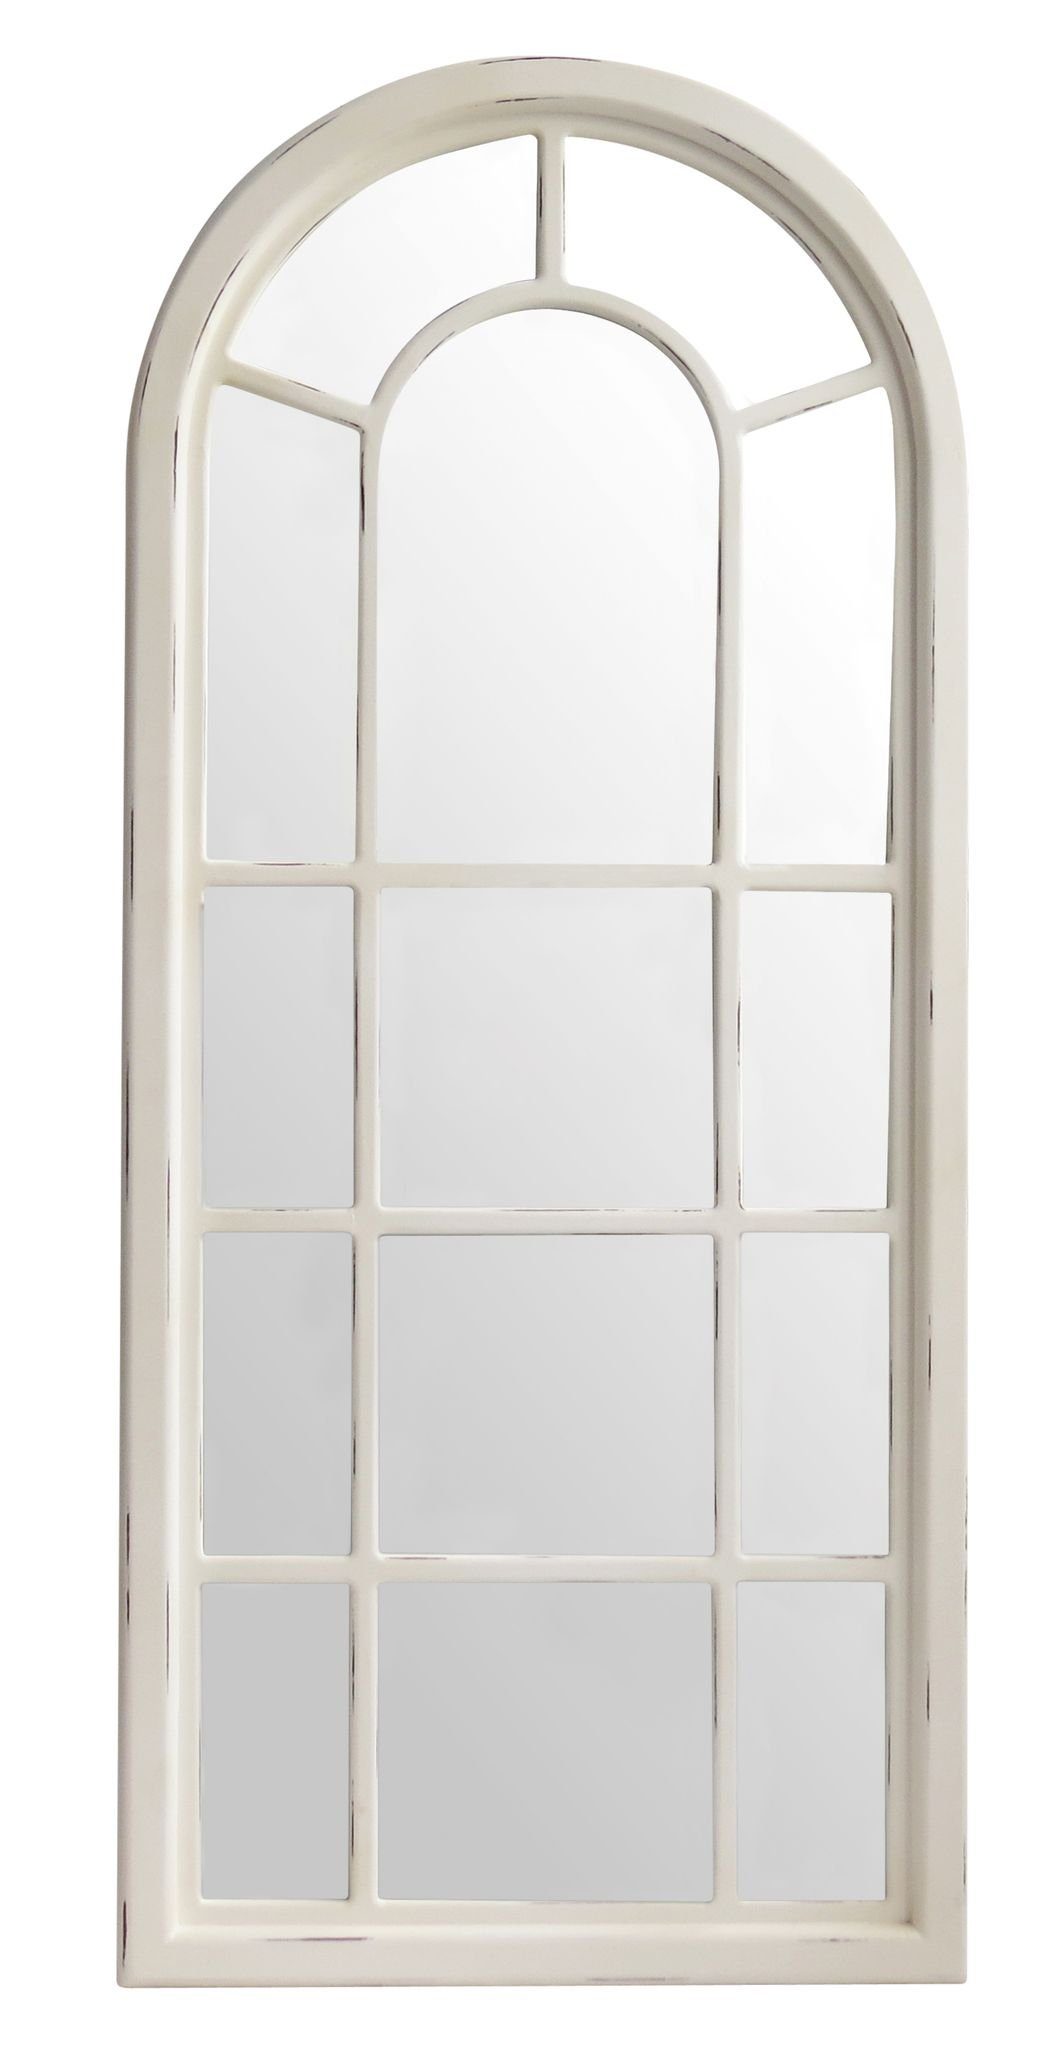 elbmöbel Wandspiegel Spiegel Wandspiegel weiß Landhaus Holz Fensteroptik,  Wandspiegel: Sprossen Fenster 70x160x4 cm weiß holz Landhausstil